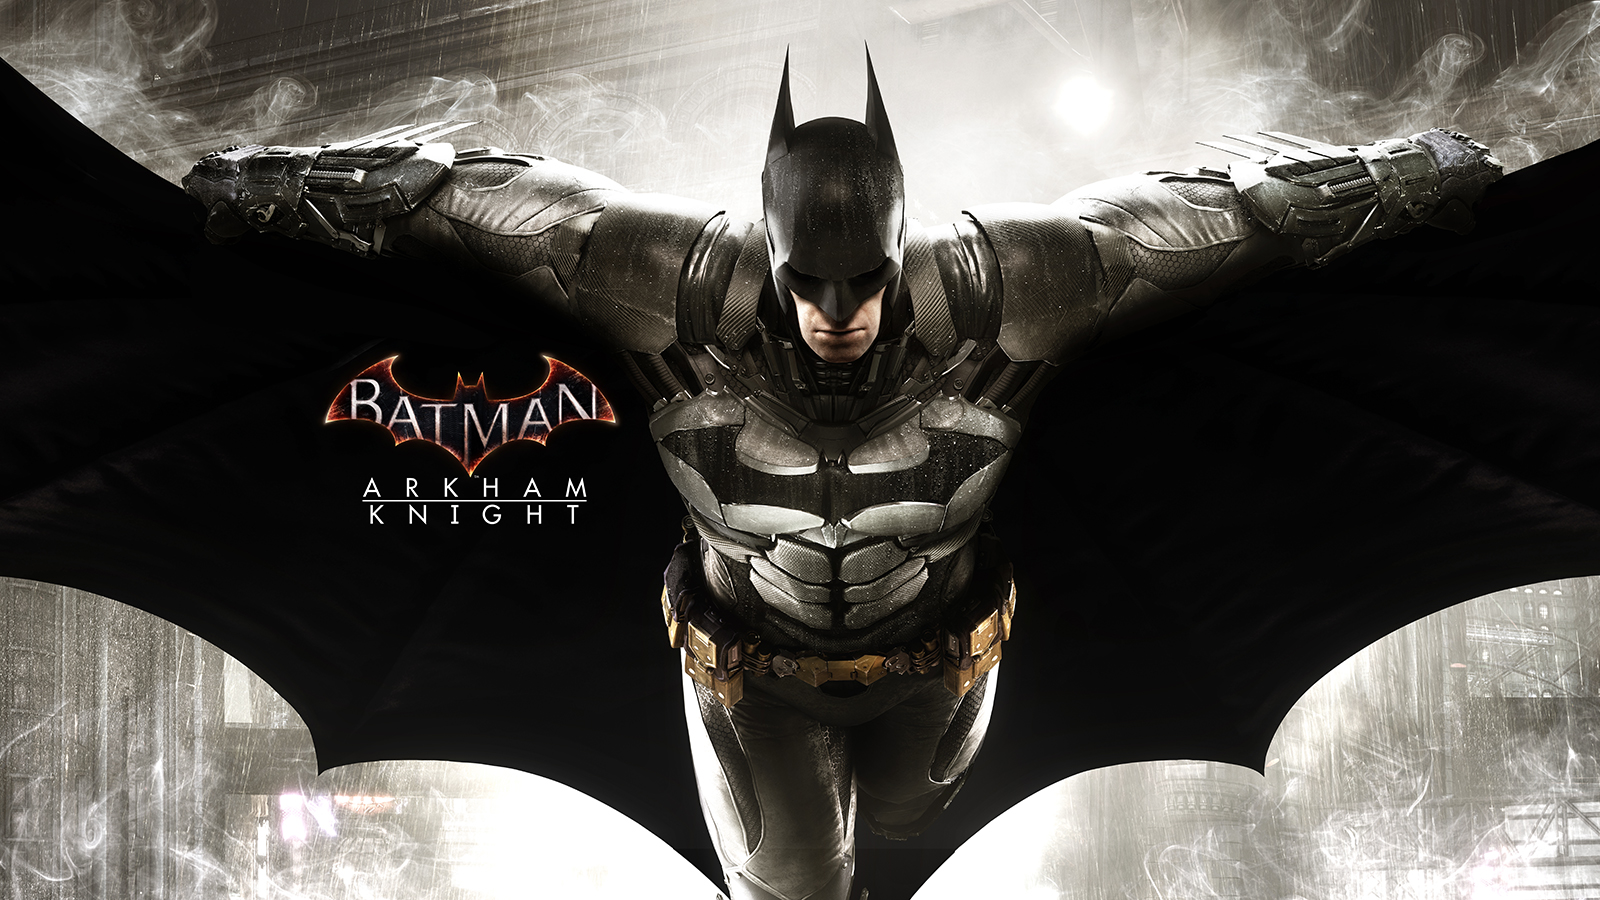 batman arkham knight ps4 download free